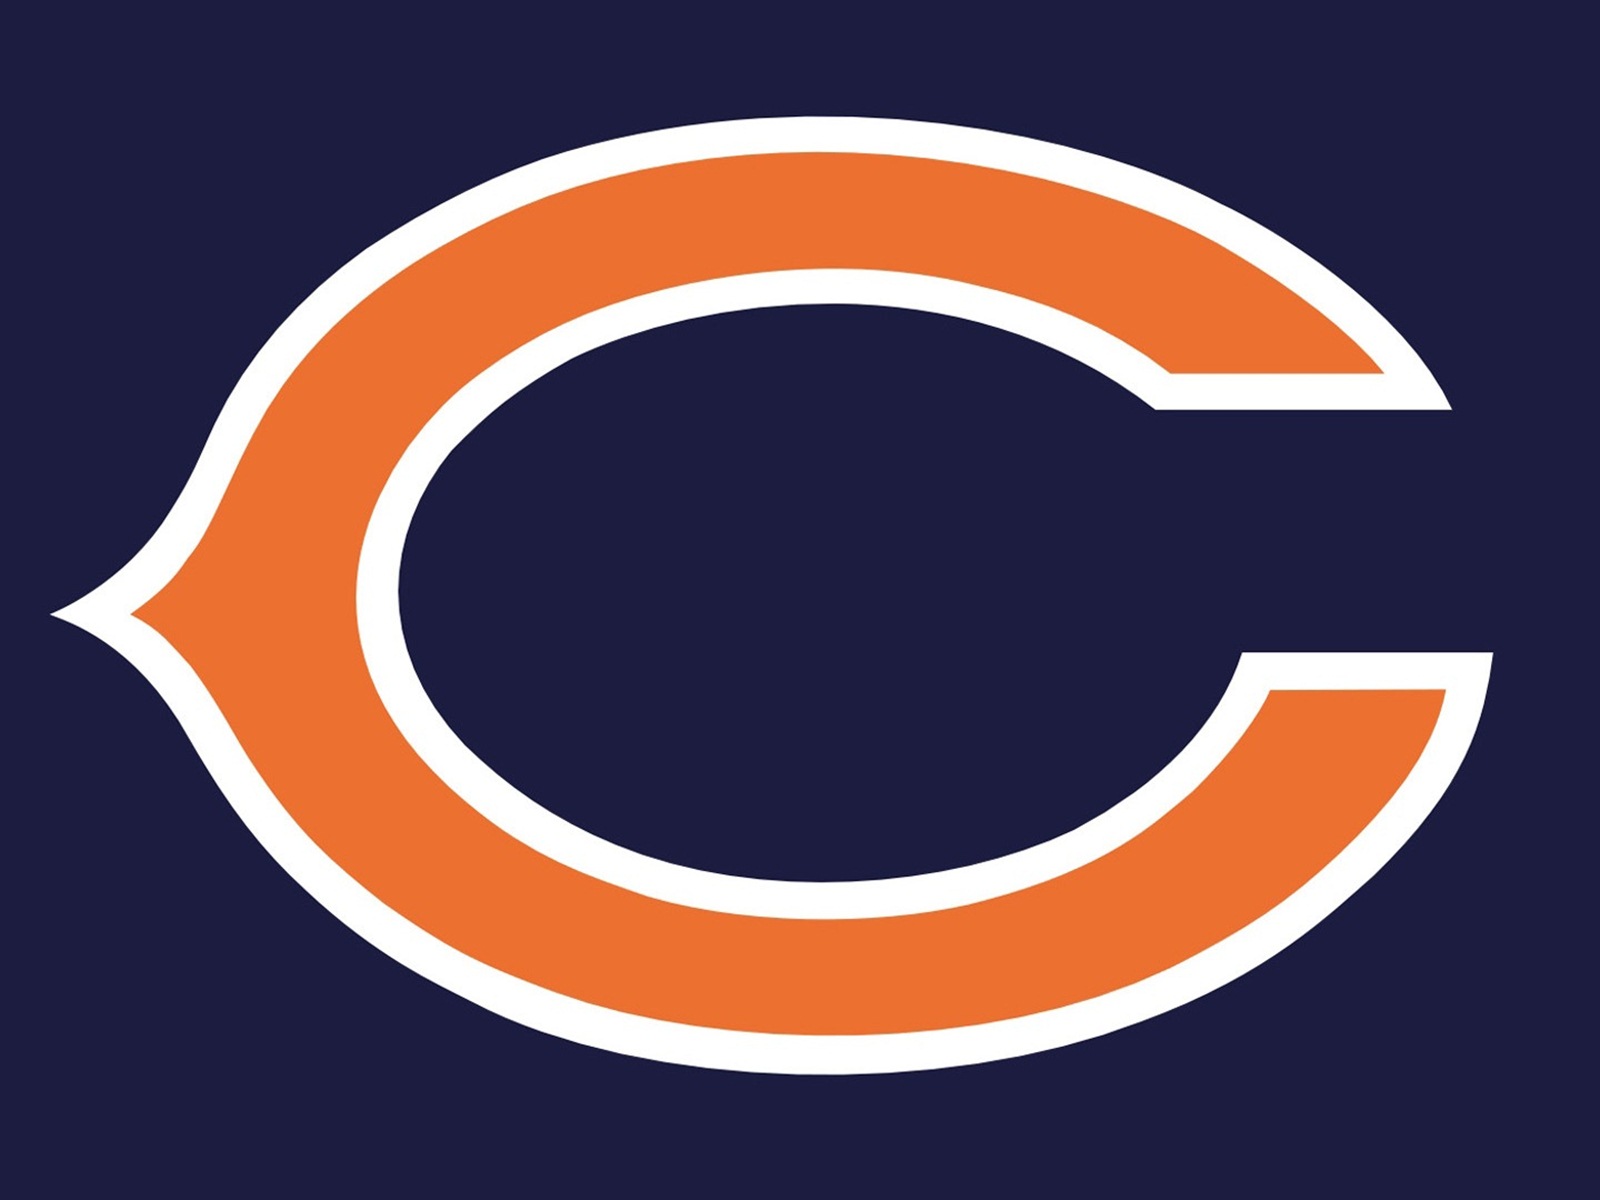 chicago bears logo